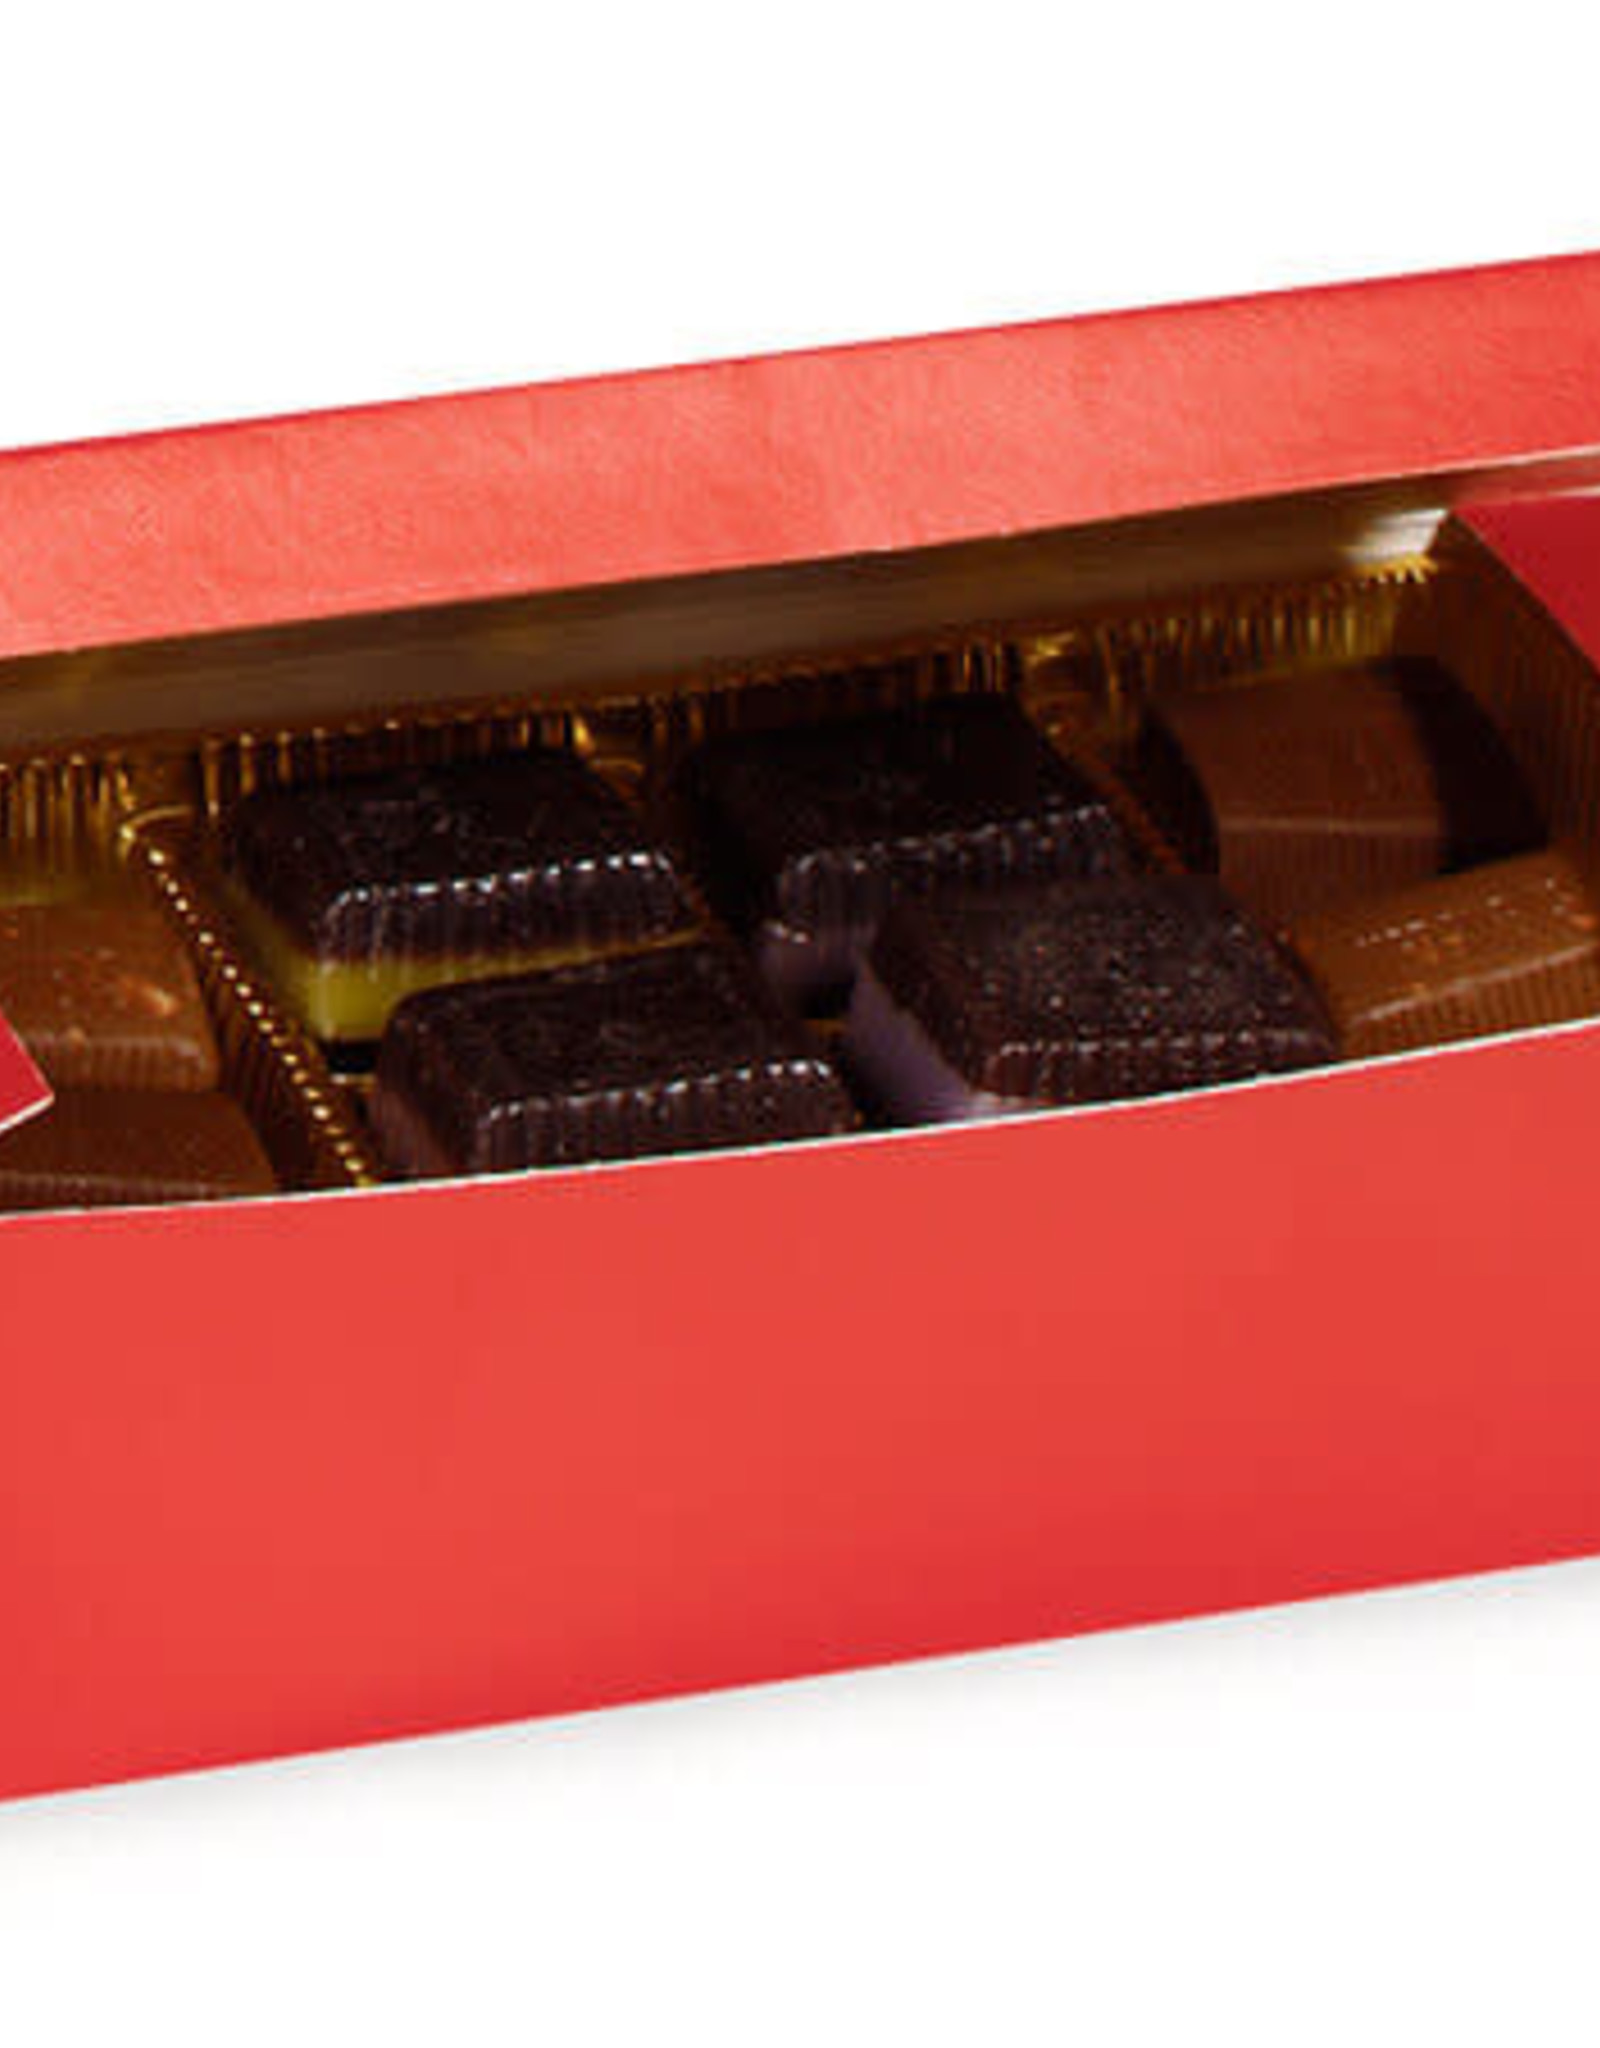 Red Candy Box (1 lb.) 7x3.5x2"